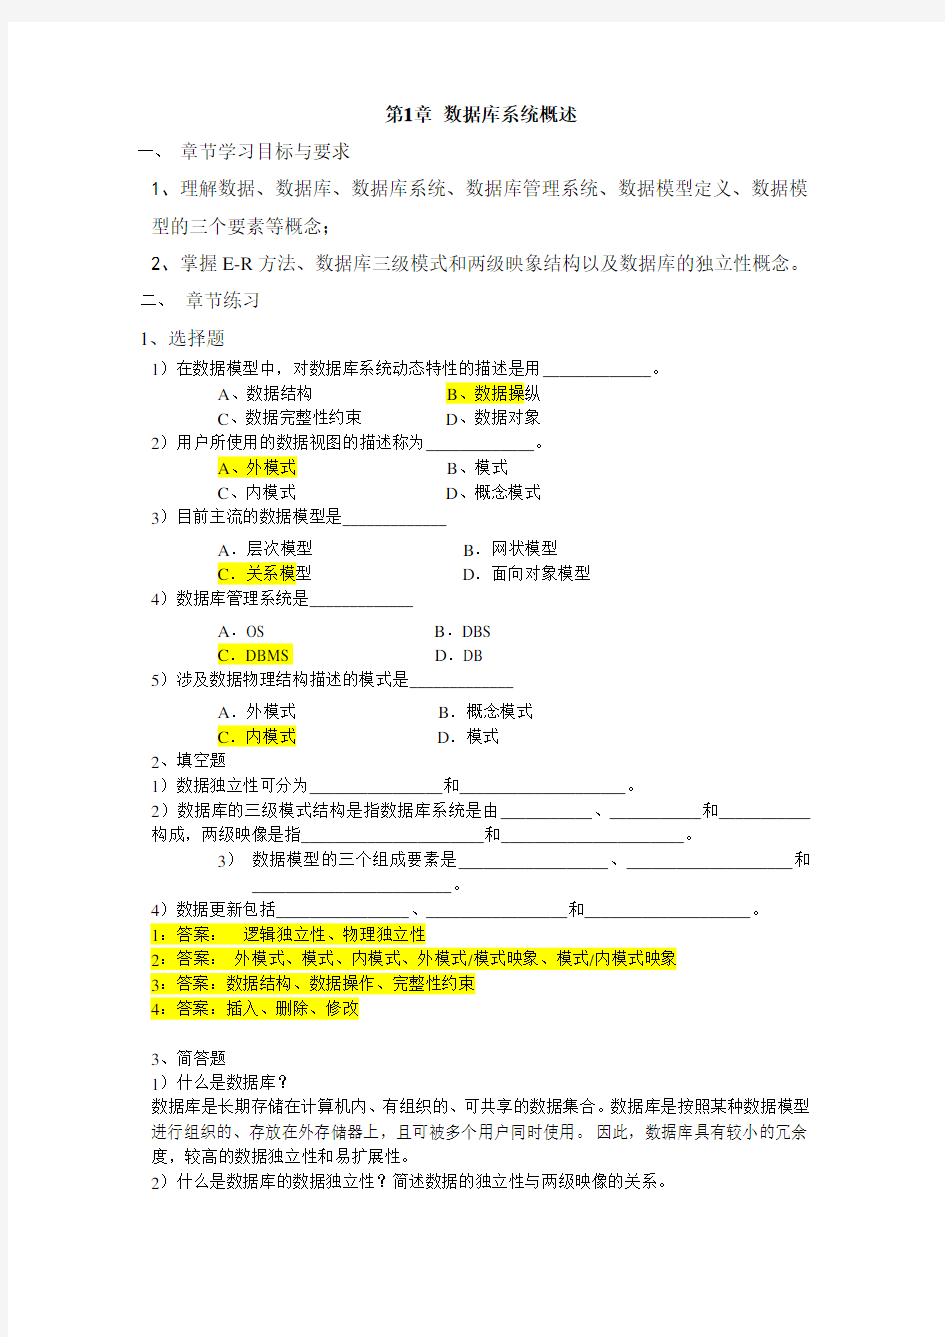 郑州大学电子商务专业-数据库原理与应用-网上考试题库参考